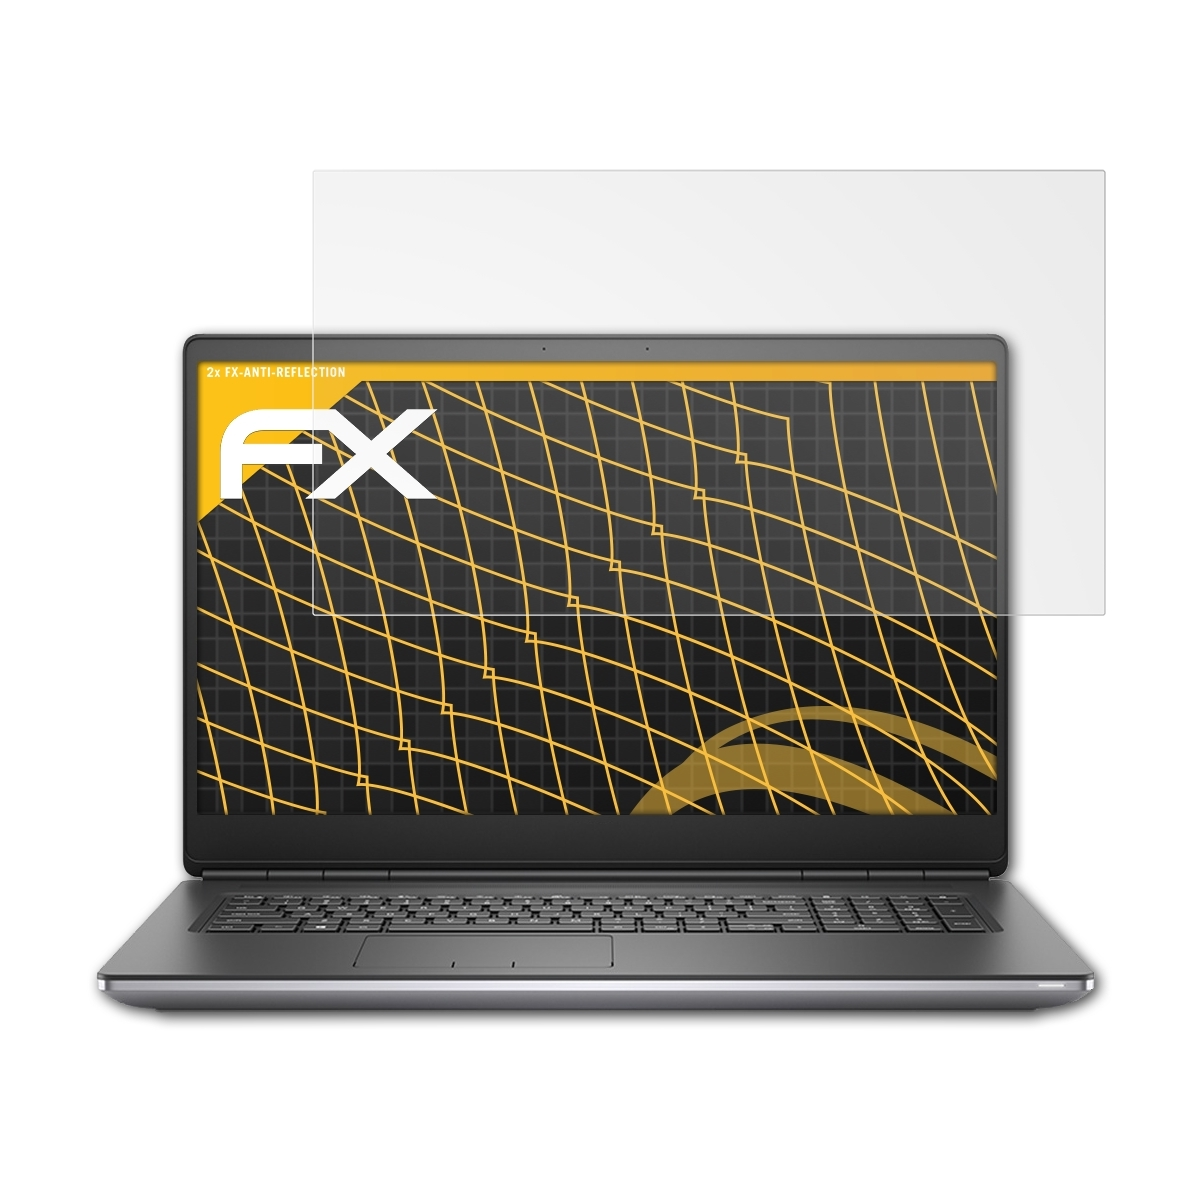 ATFOLIX 2x FX-Antireflex Displayschutz(für Dell 7550) Precision